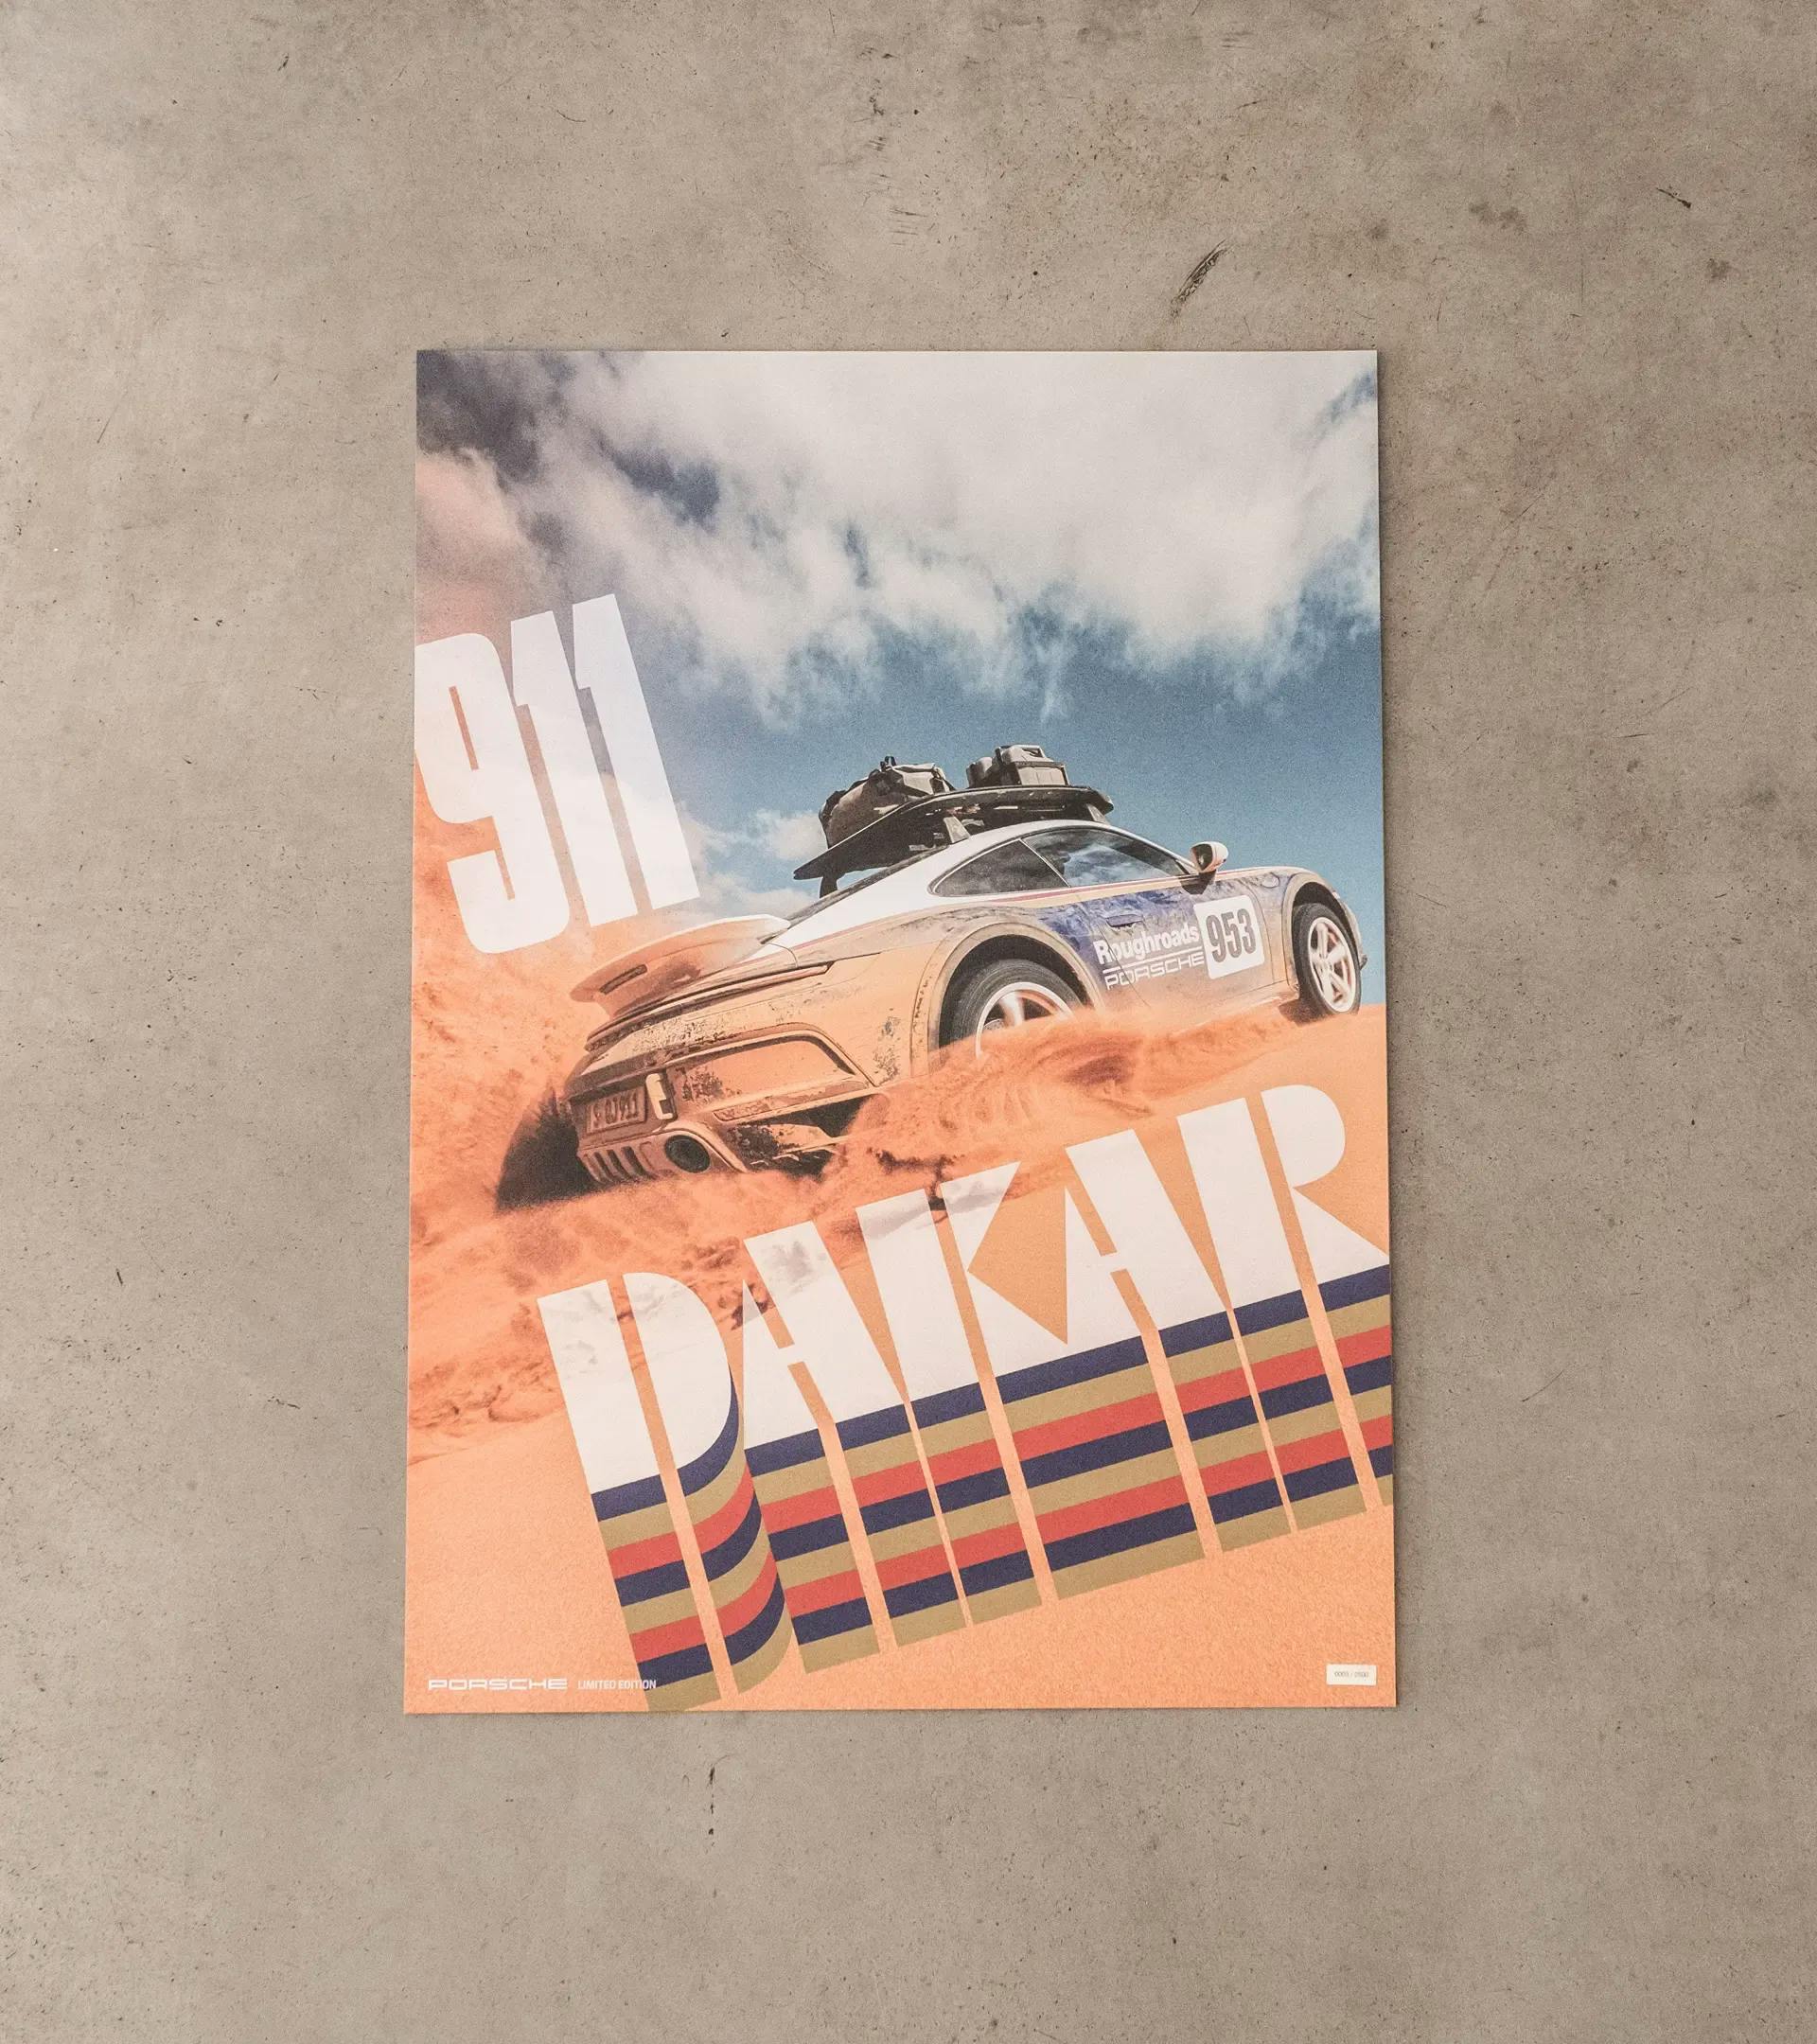 Juego de pósteres - 911 Dakar 2